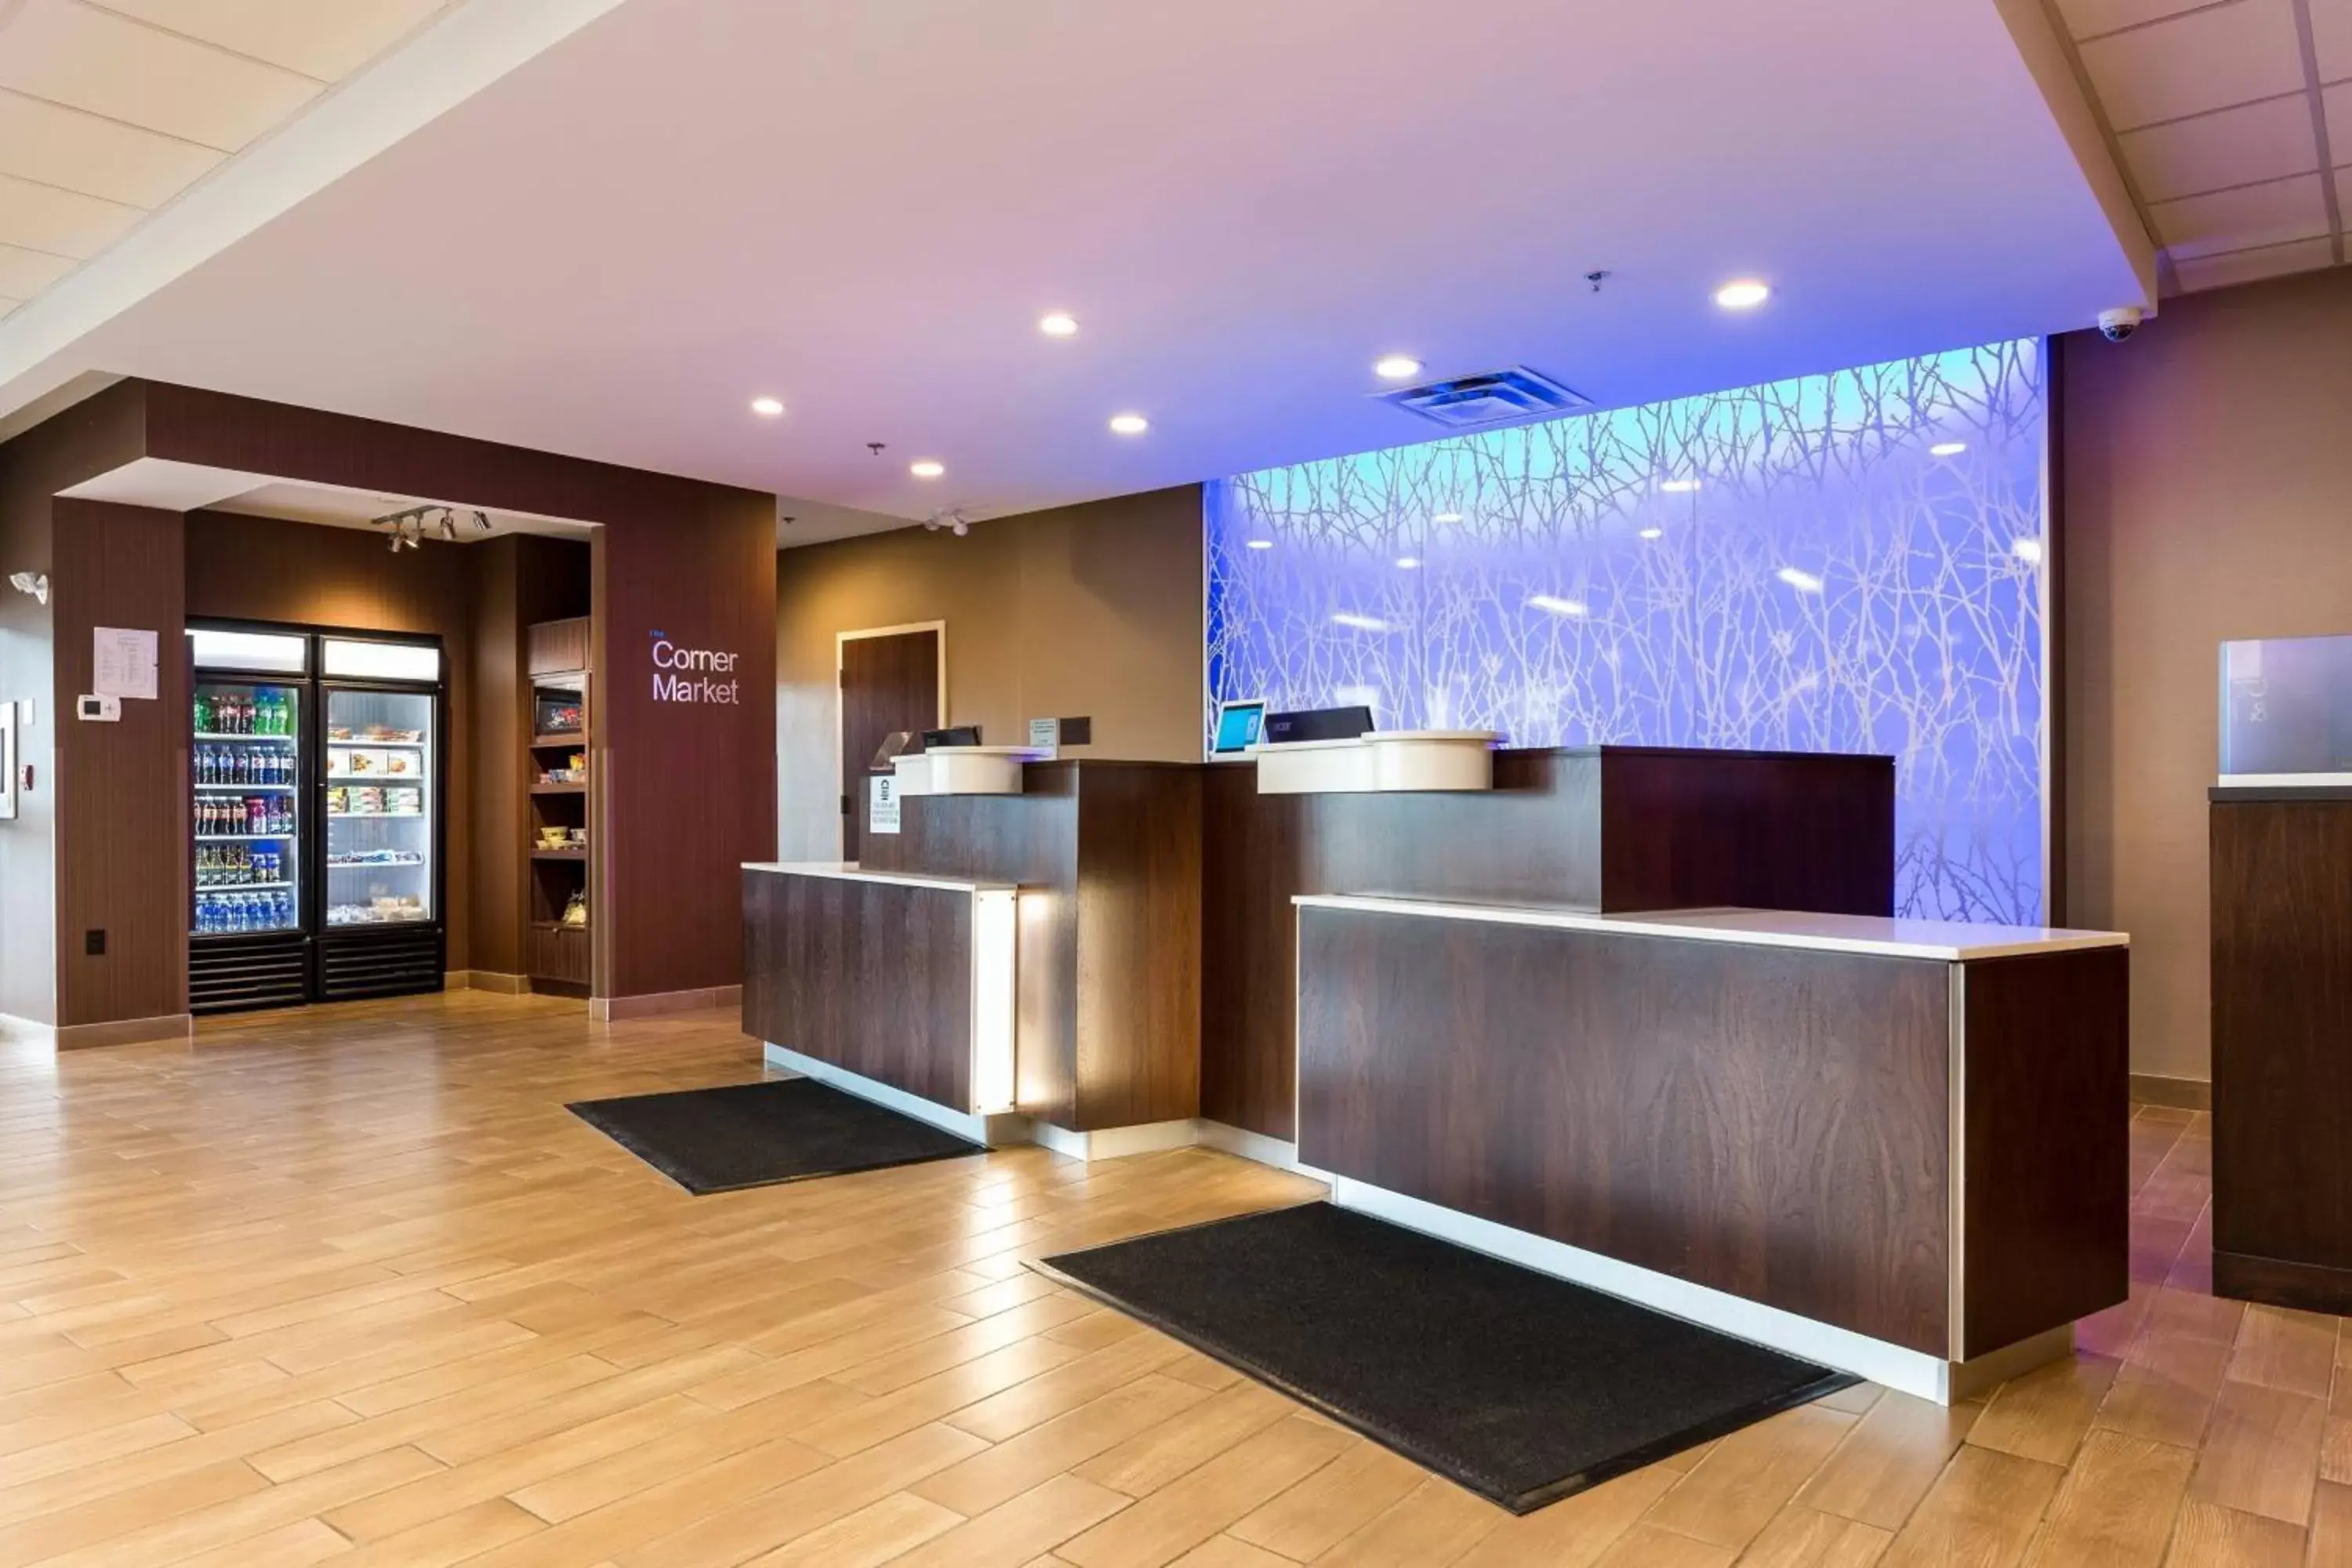 Lobby or reception, Lobby/Reception in Fairfield Inn & Suites by Marriott Edmonton North